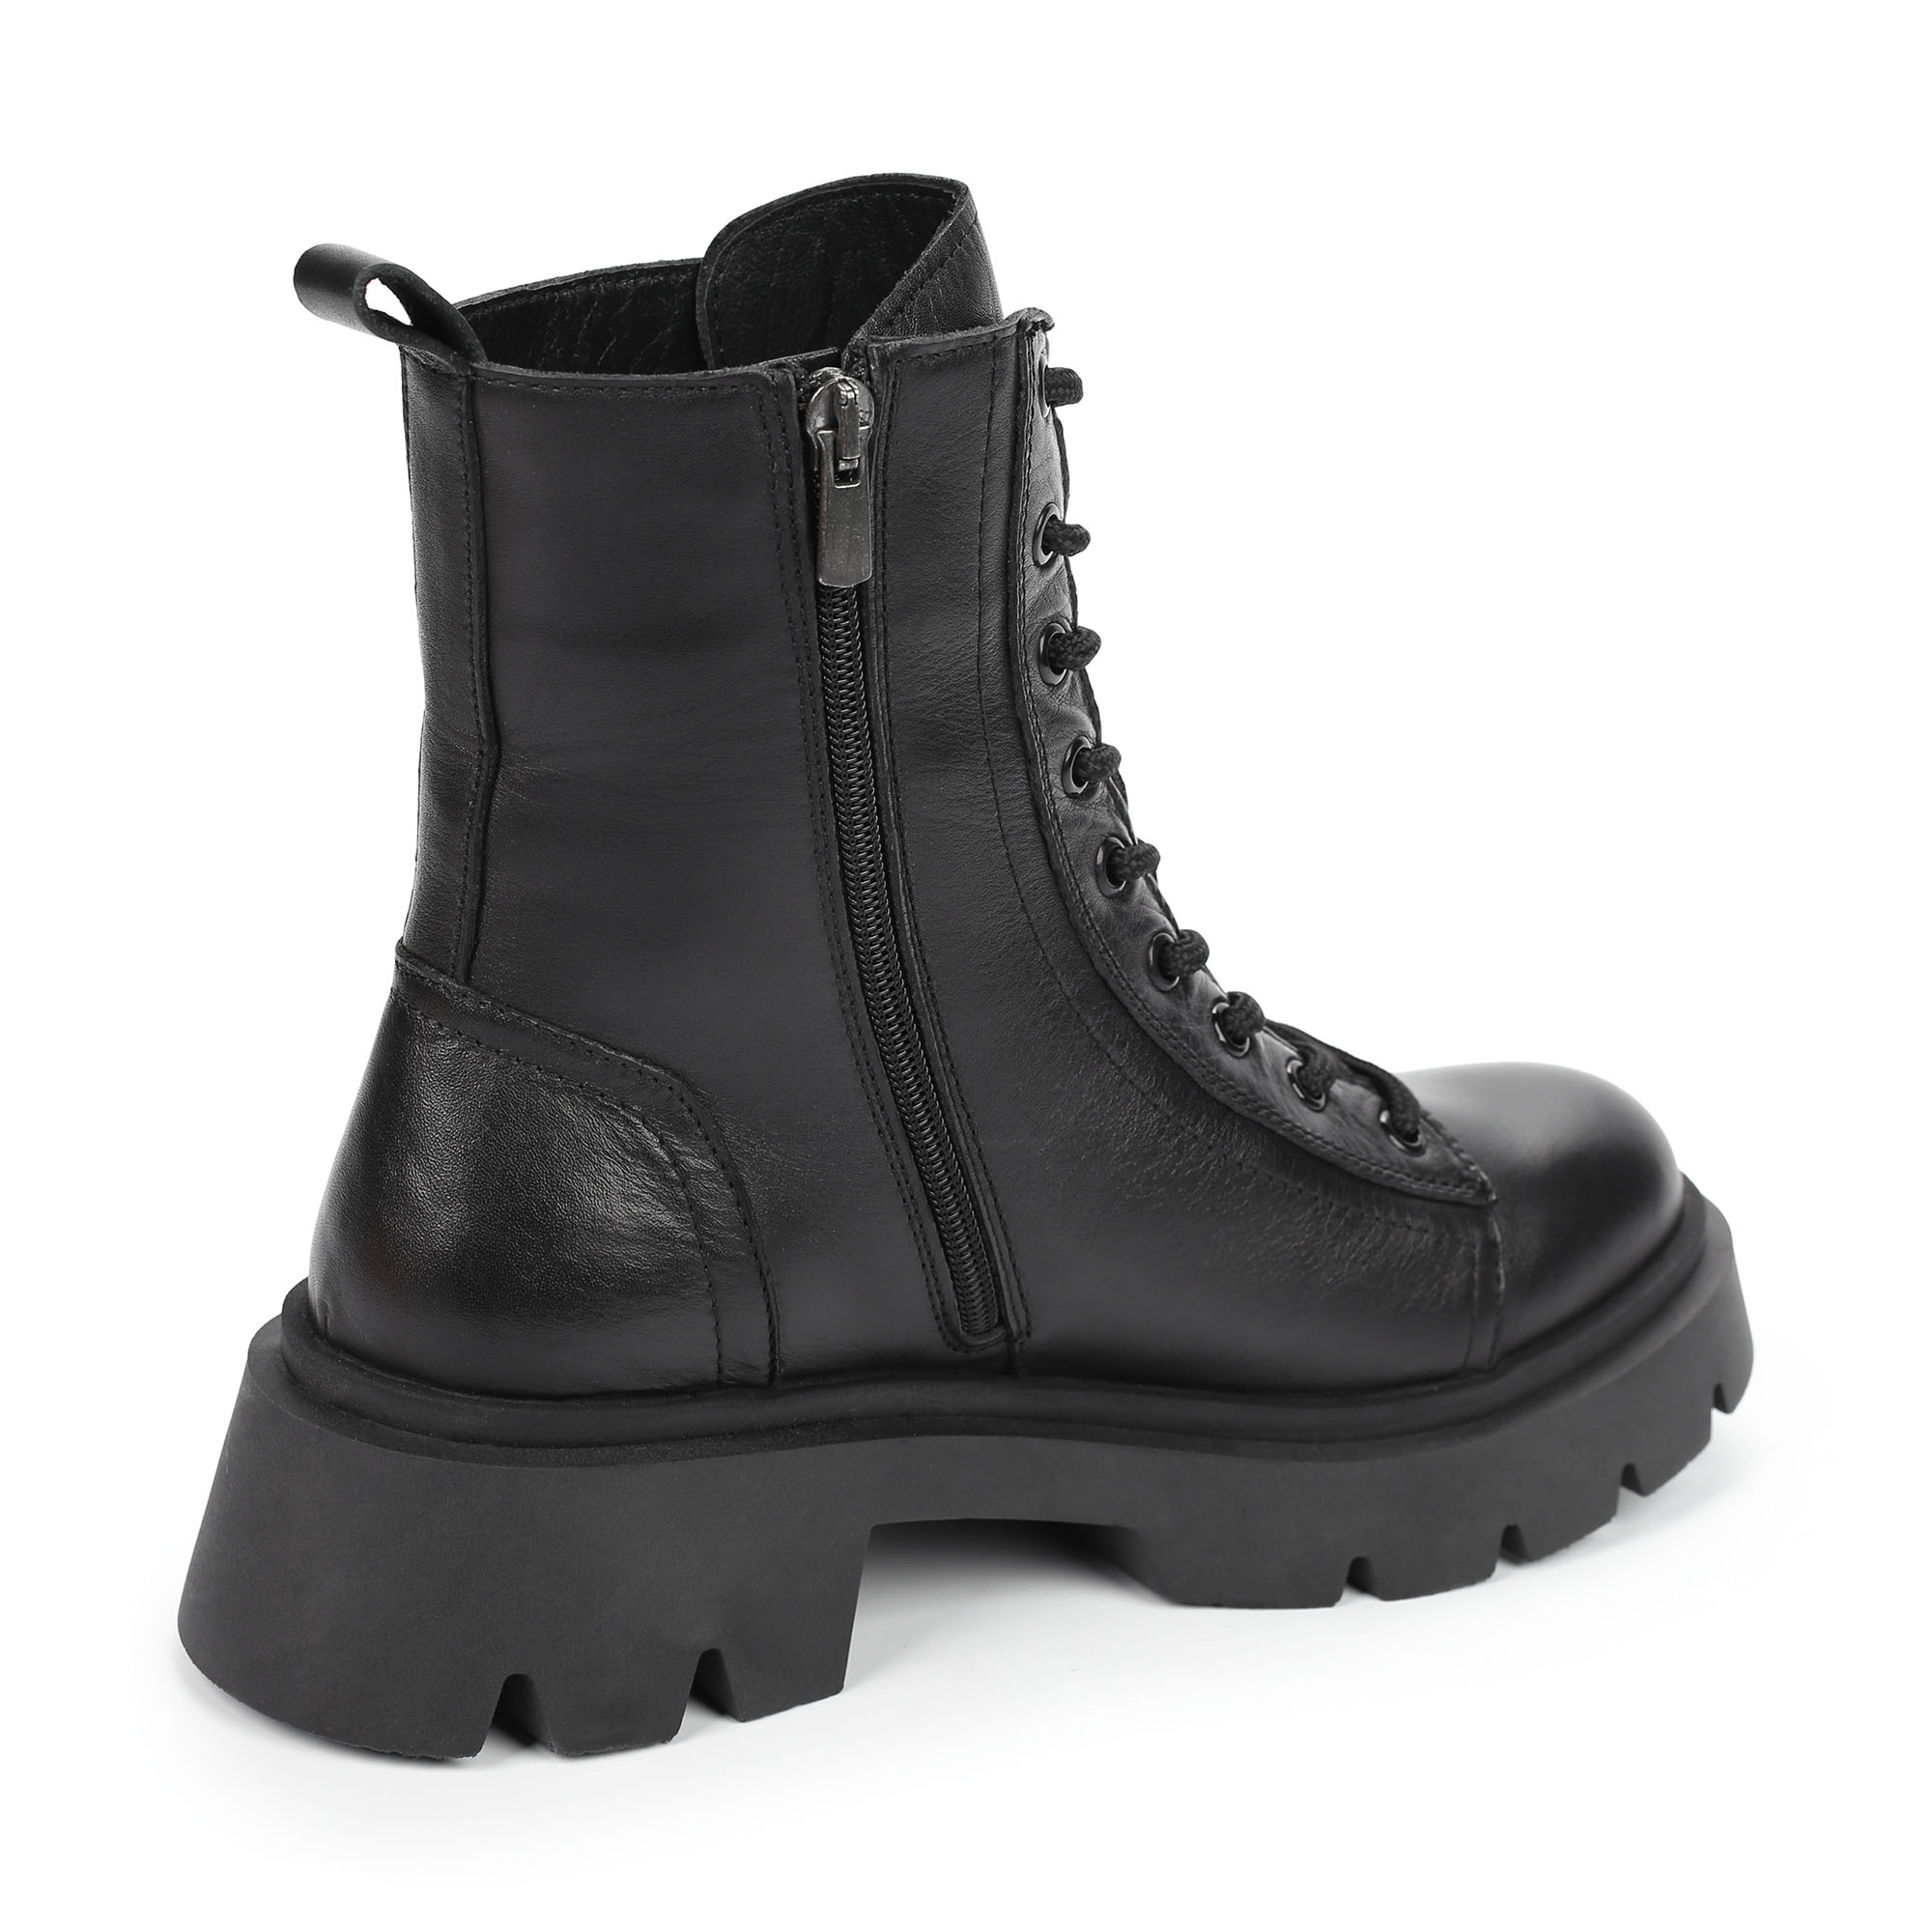 Ботинки Thomas Munz 555-006B-2102, цвет черный, размер 37 - фото 3